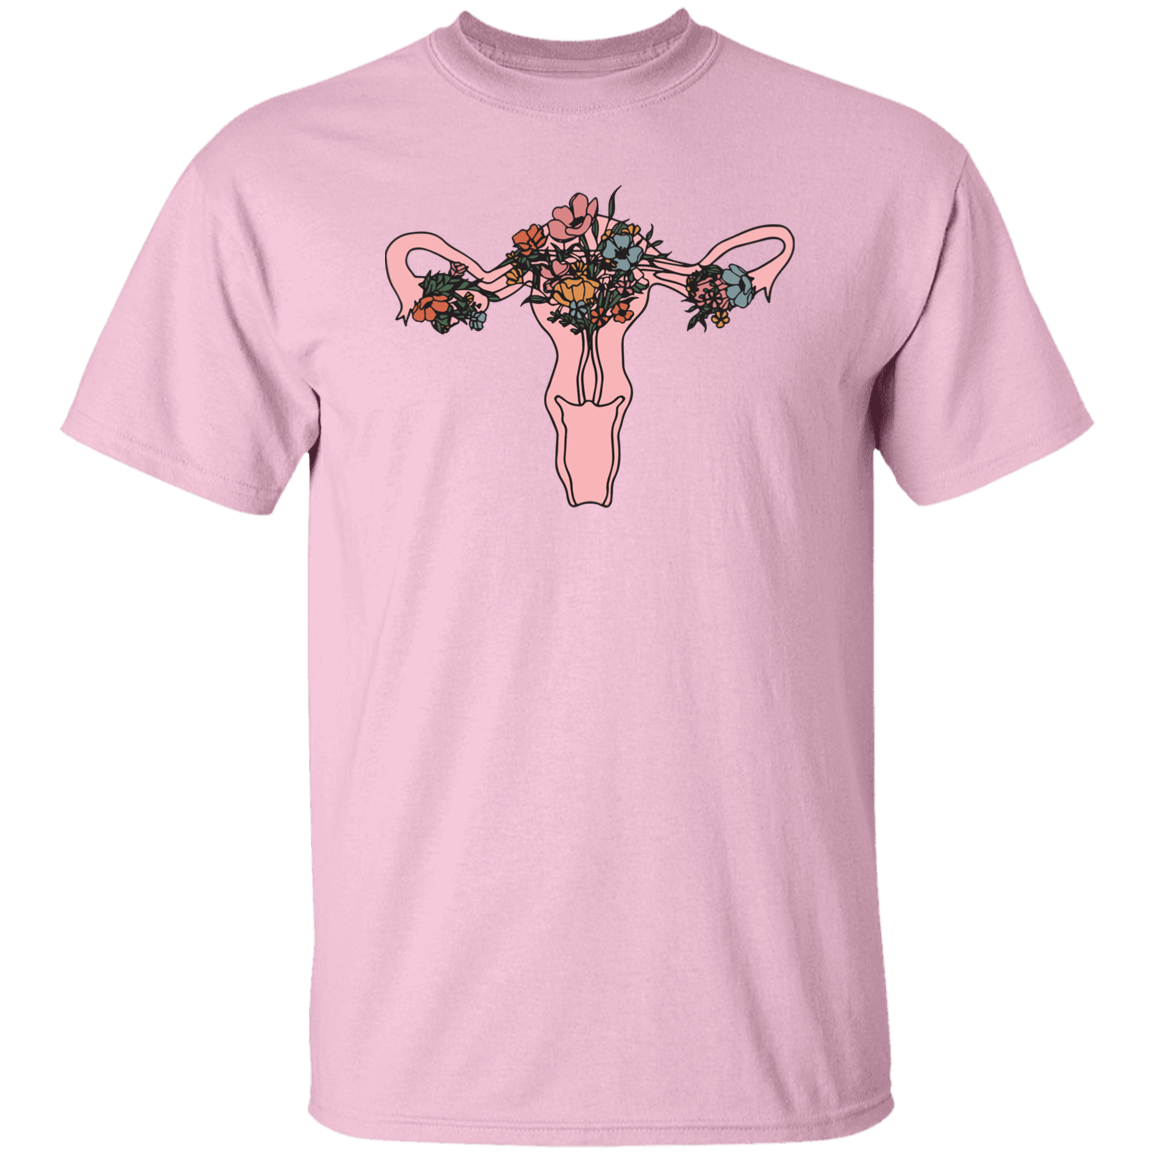 HPSP Anatomy Shirt, Floral Lover, Healing Shirt, Internists Shirt, Unisex Shirt. - Christian Art Bag